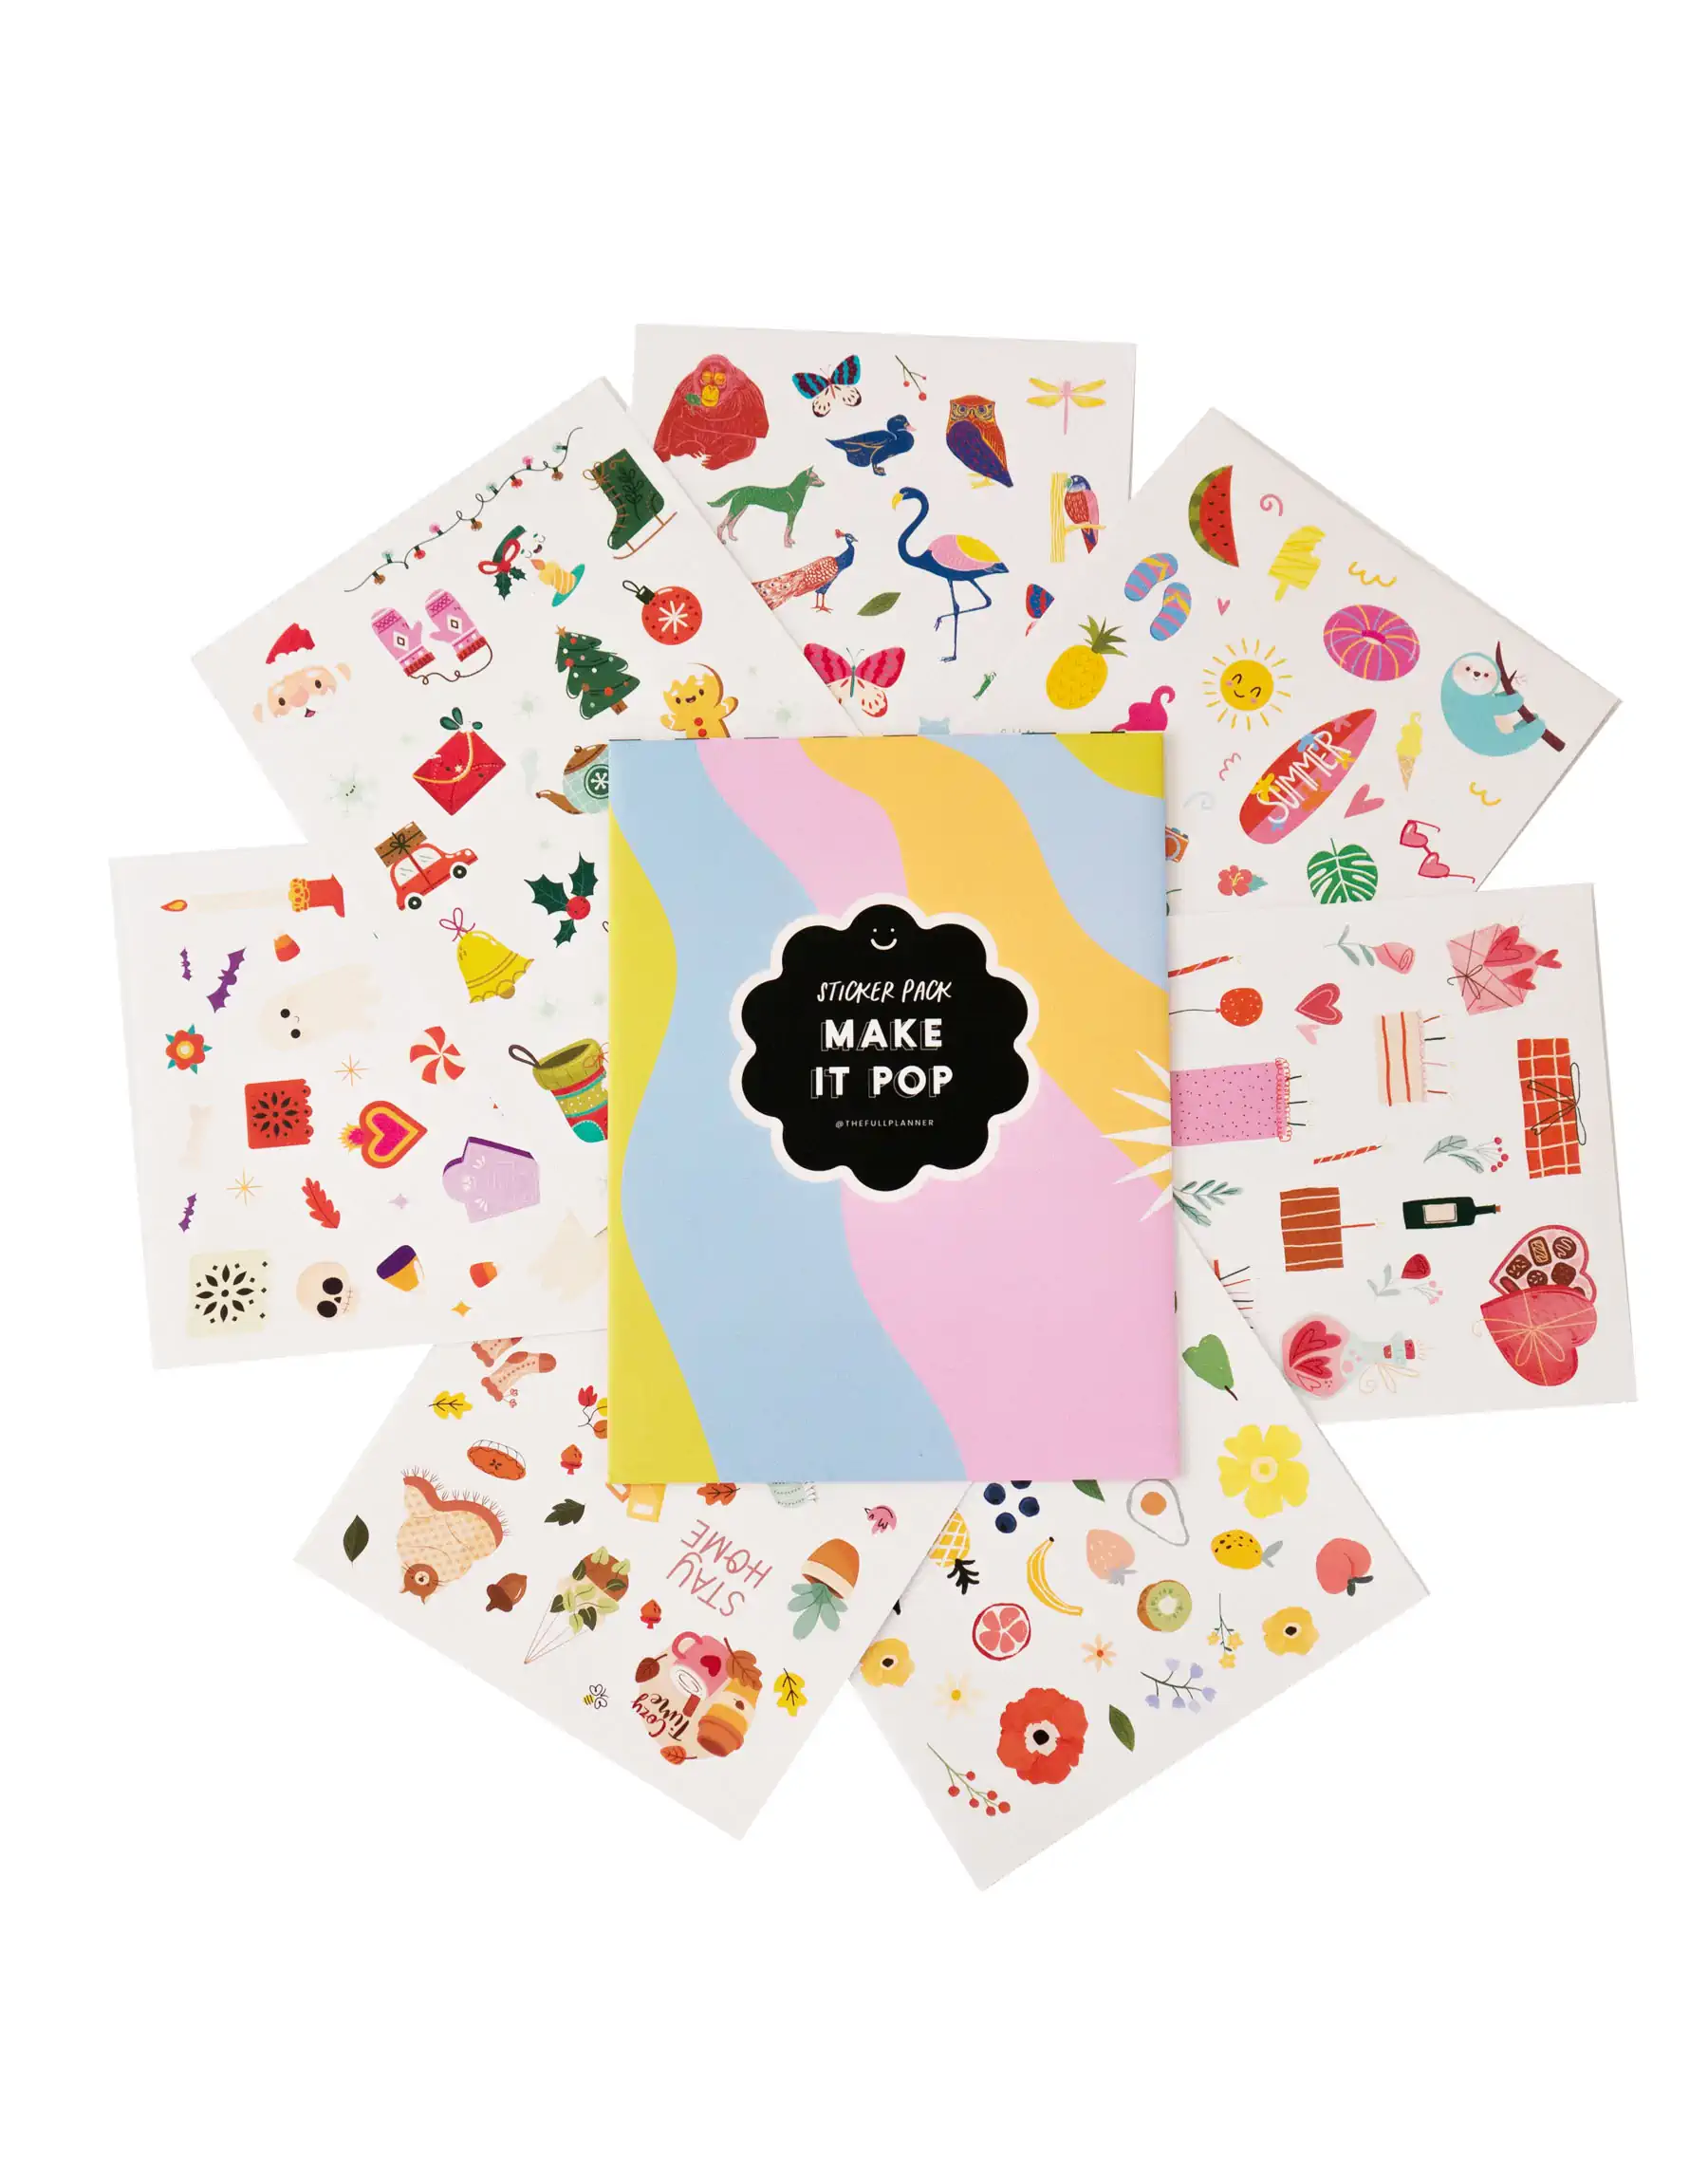 Sticker Pack – Make It Pop